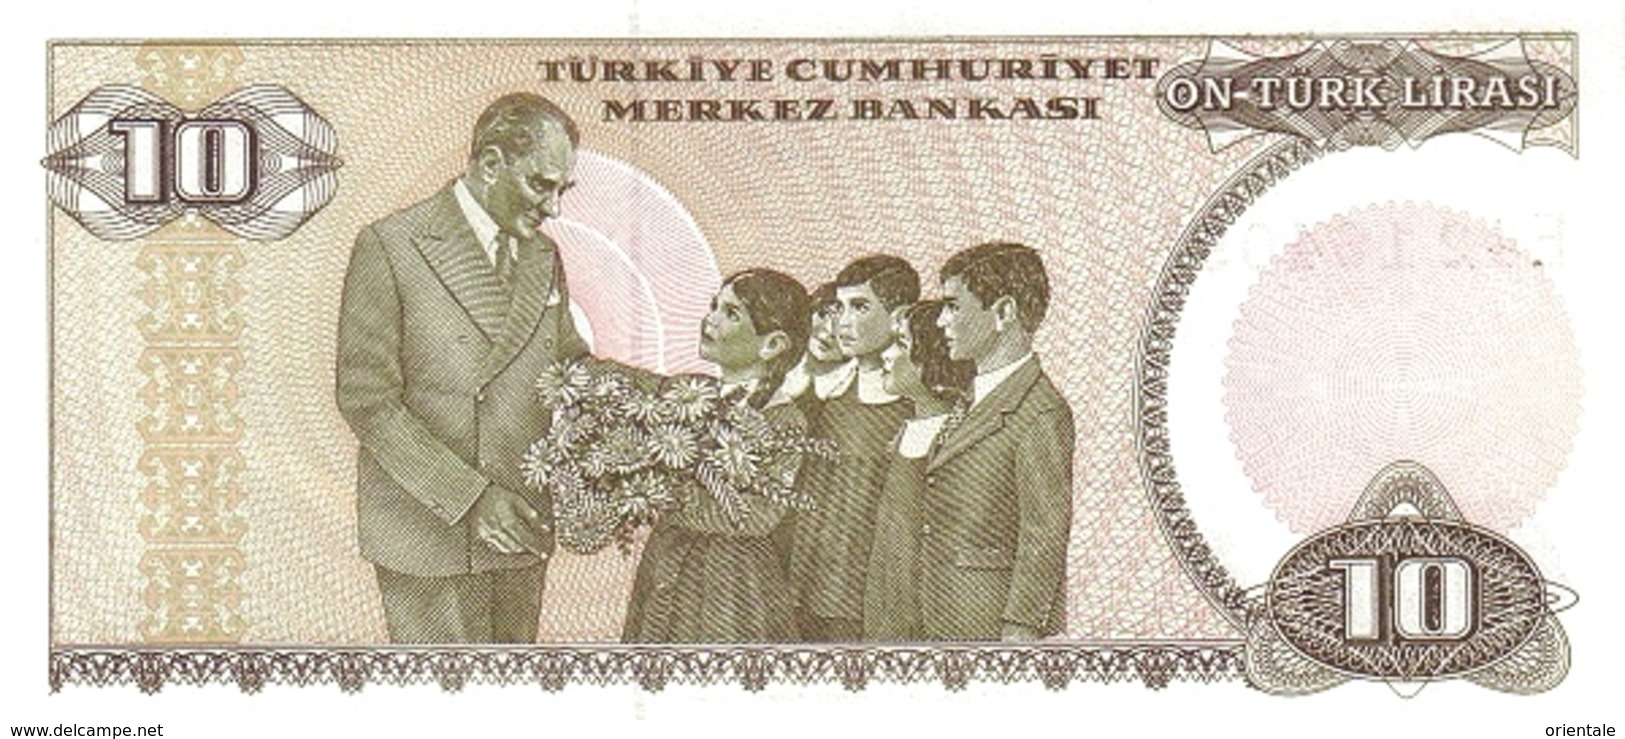 TURKEY P. 193 10 L 1970 UNC - Turchia